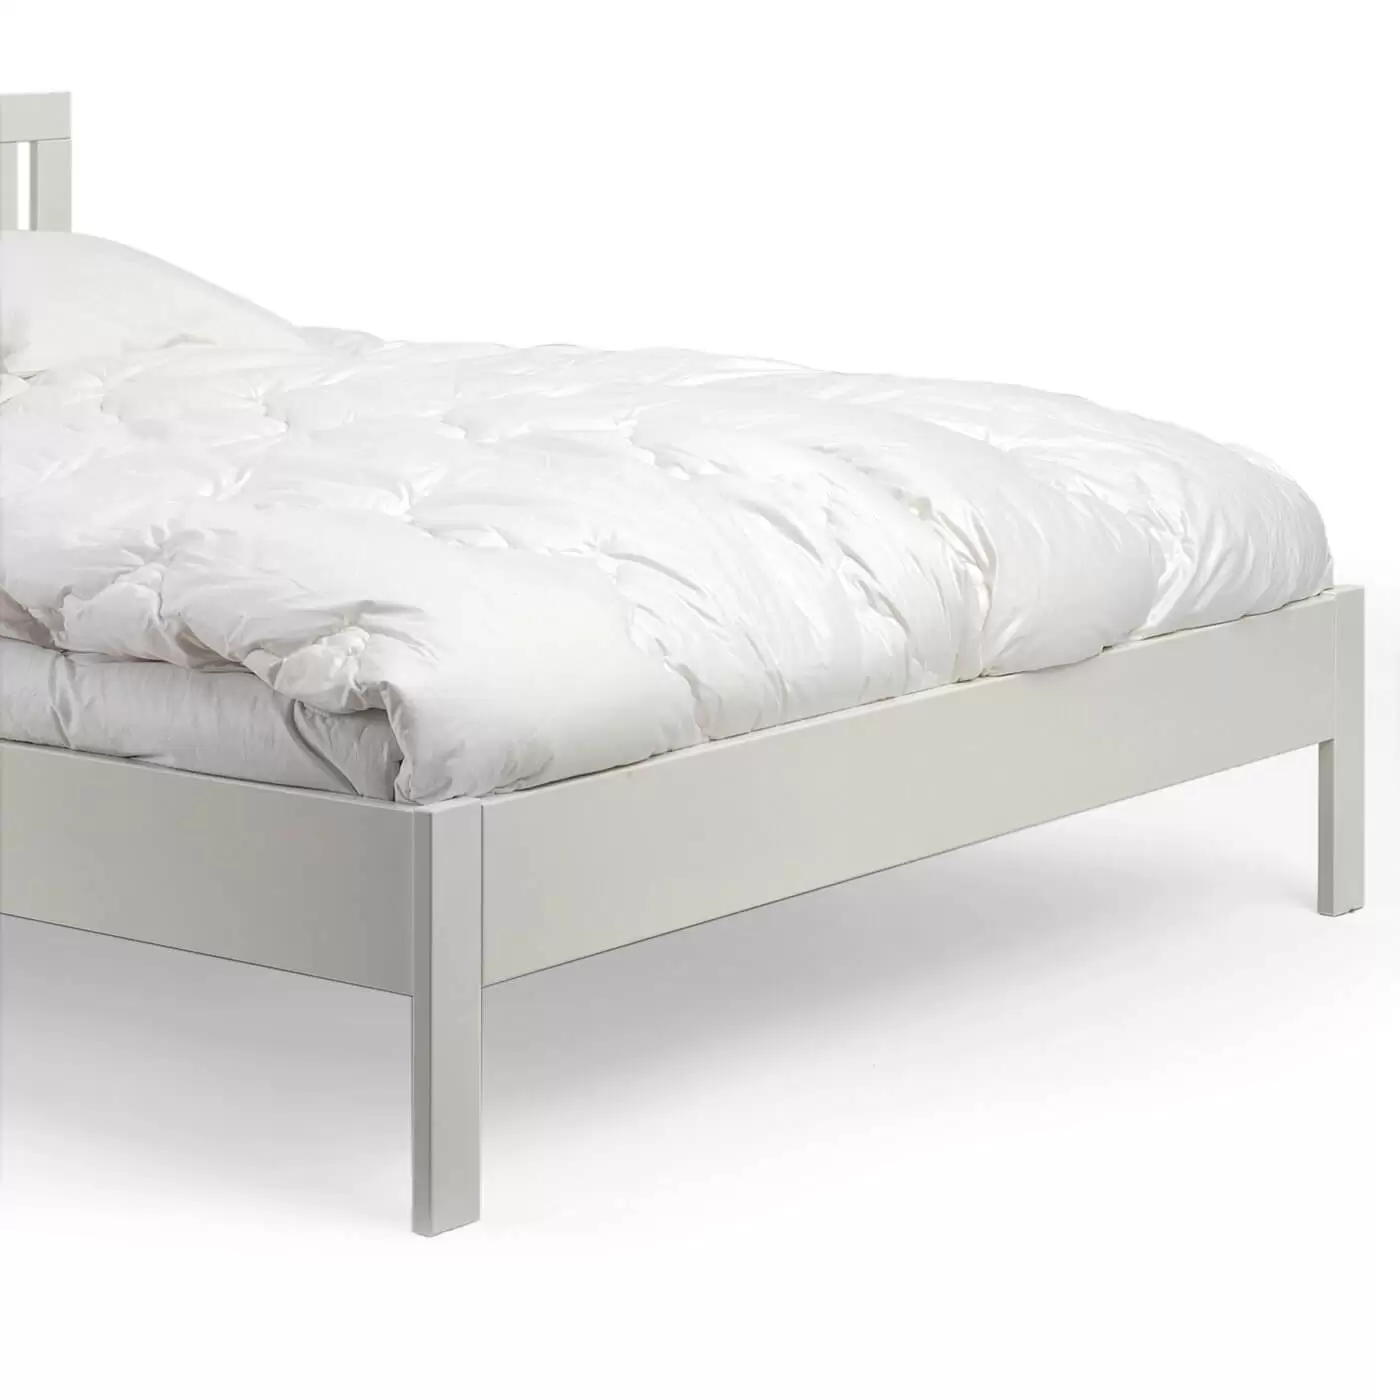 Łóżko dwuosobowe białe KOLI drewniane. Przybliżony widok na wysokie proste białe nóżki łóżka 2 osobowego 160x200 z drewna brzozy w kolorze białym. Skandynawski design